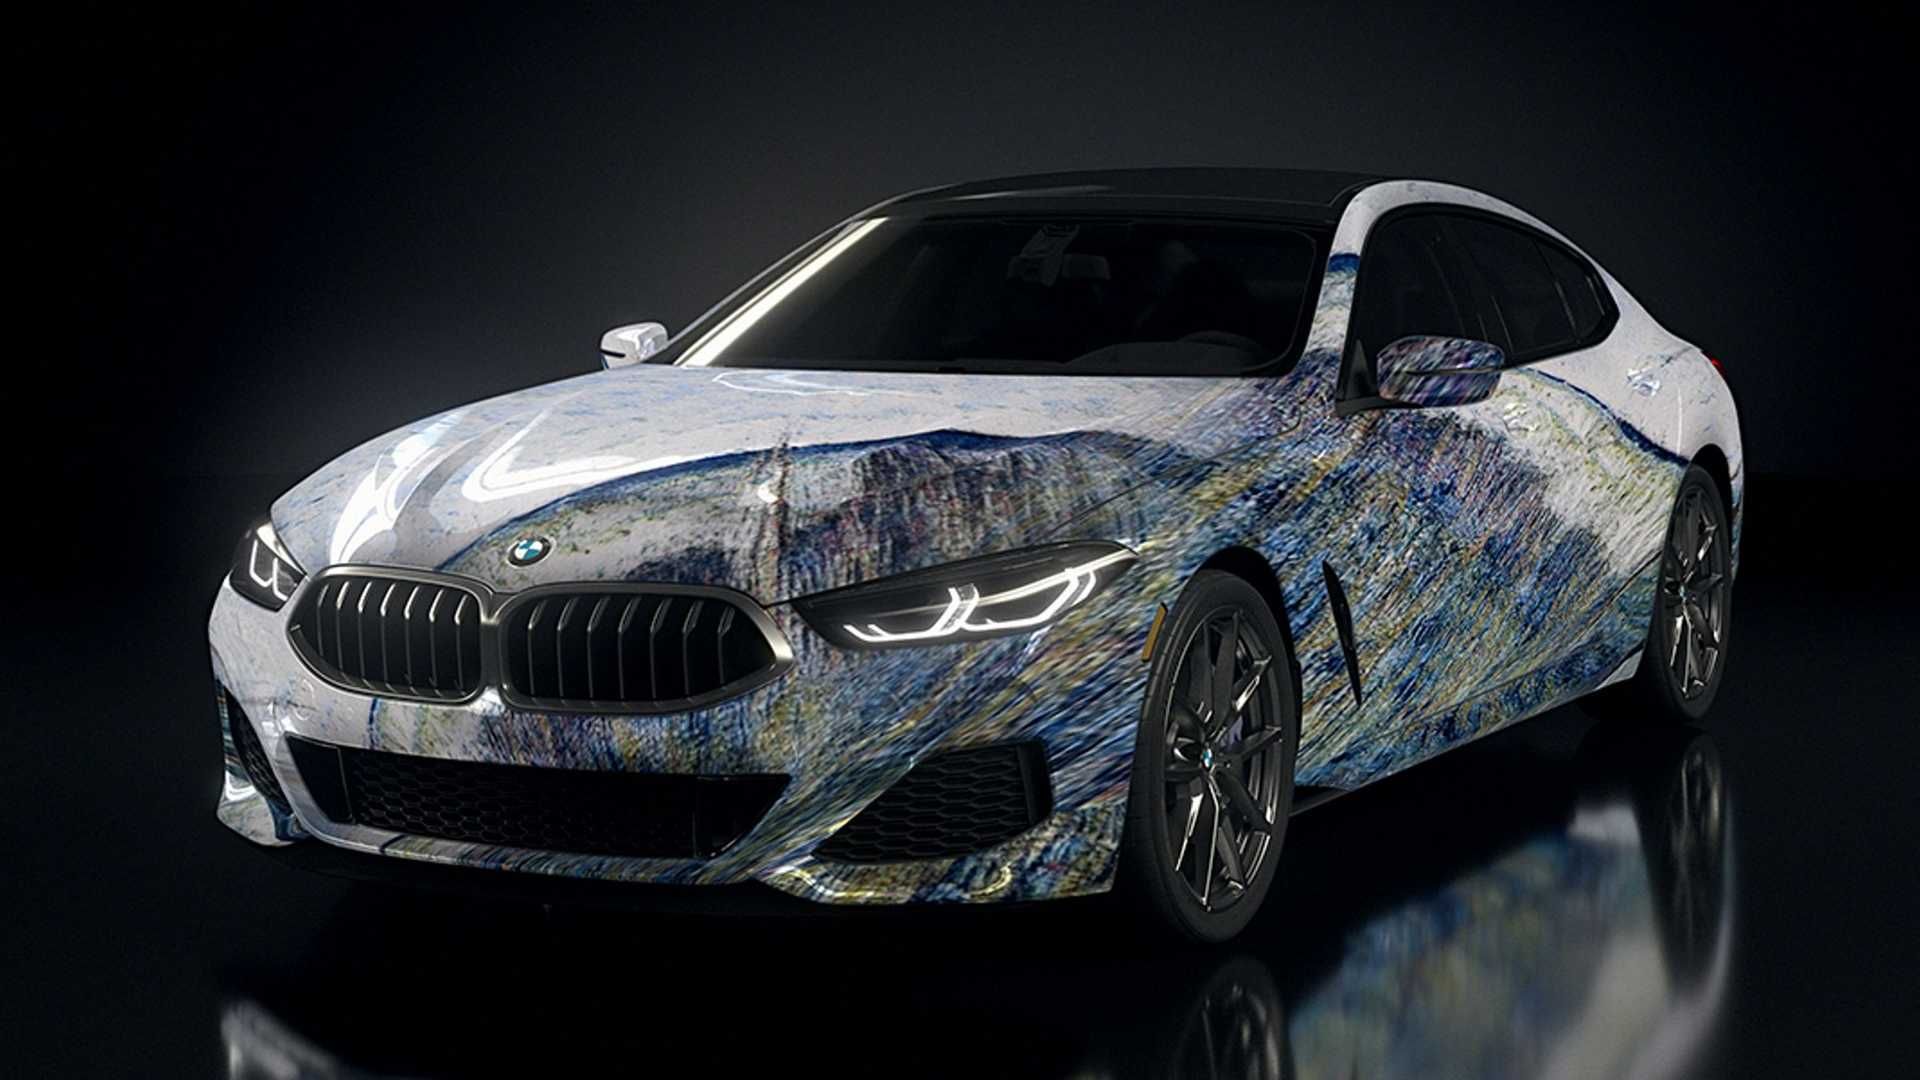 بی ام و سری 8 گرن کوپه / BMW 8 Series Gran Coupe با طرح رنگ تلفیق هنر قدیم و مدرن